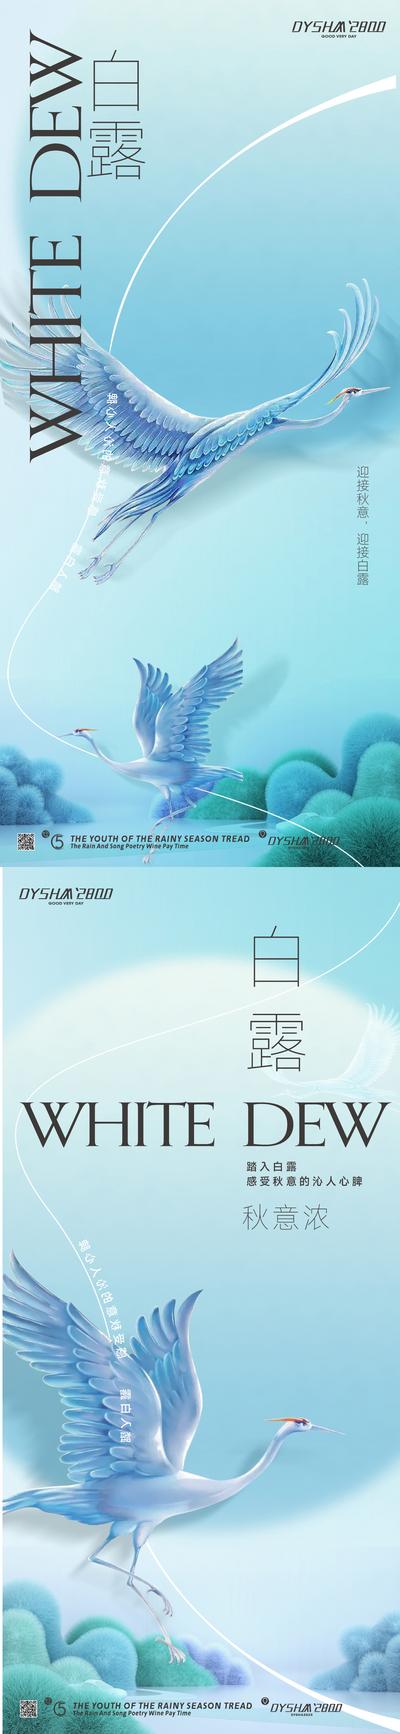 南门网 广告 海报 节气 白鹭 白露 唯美 小清醒 仙鹤 简约 系列